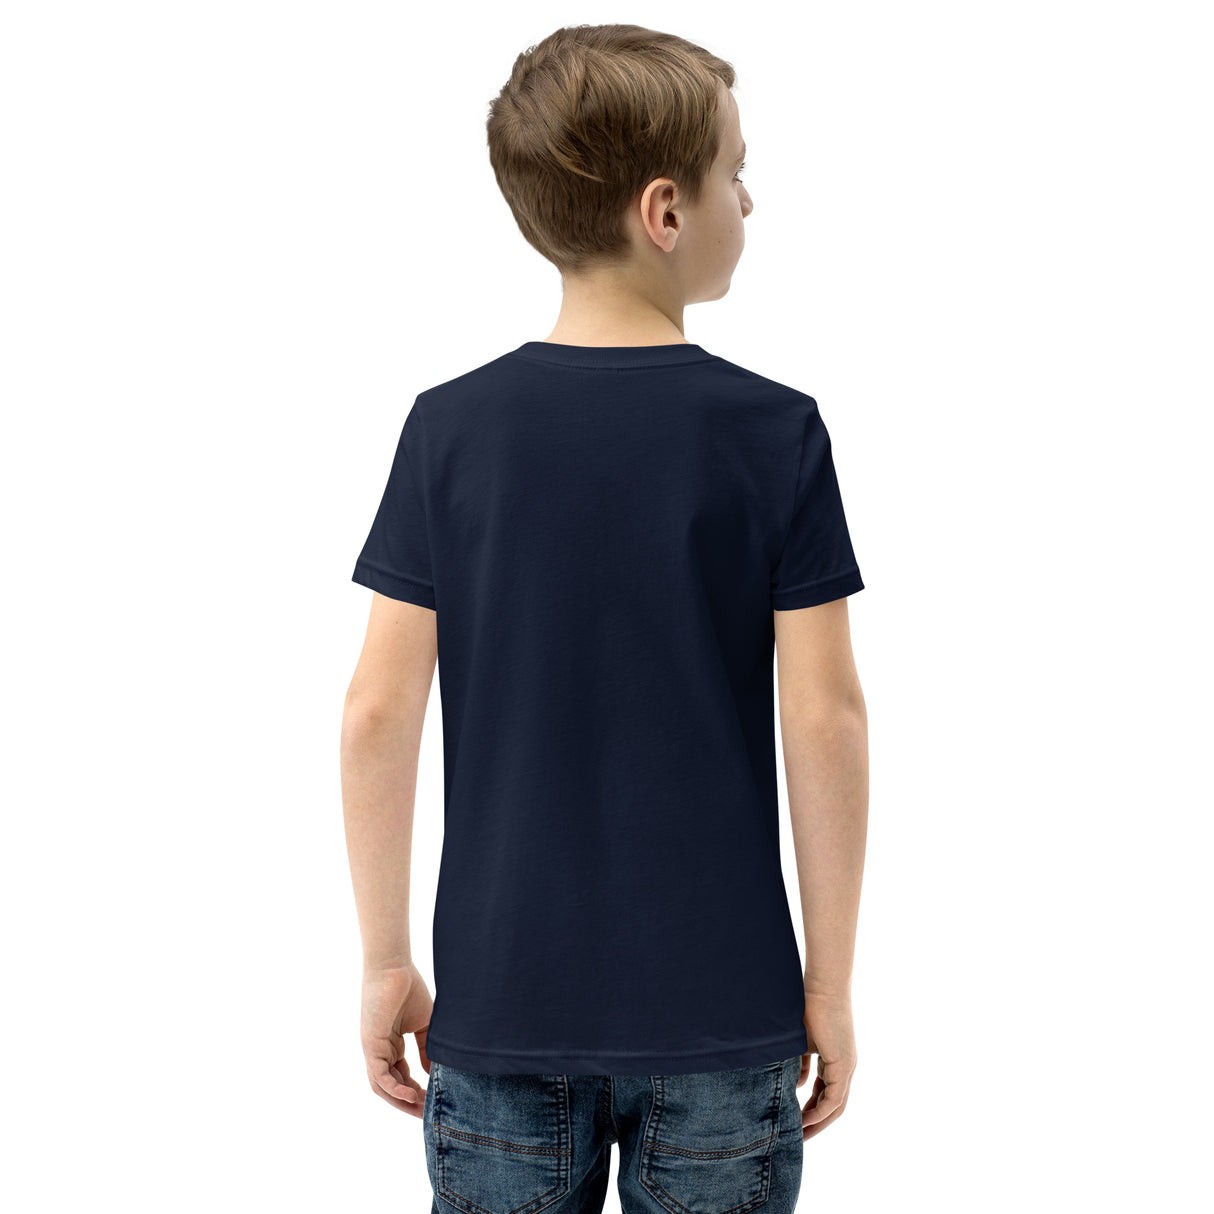 Kids' Top Ten Baseball Short Sleeve T-Shirt